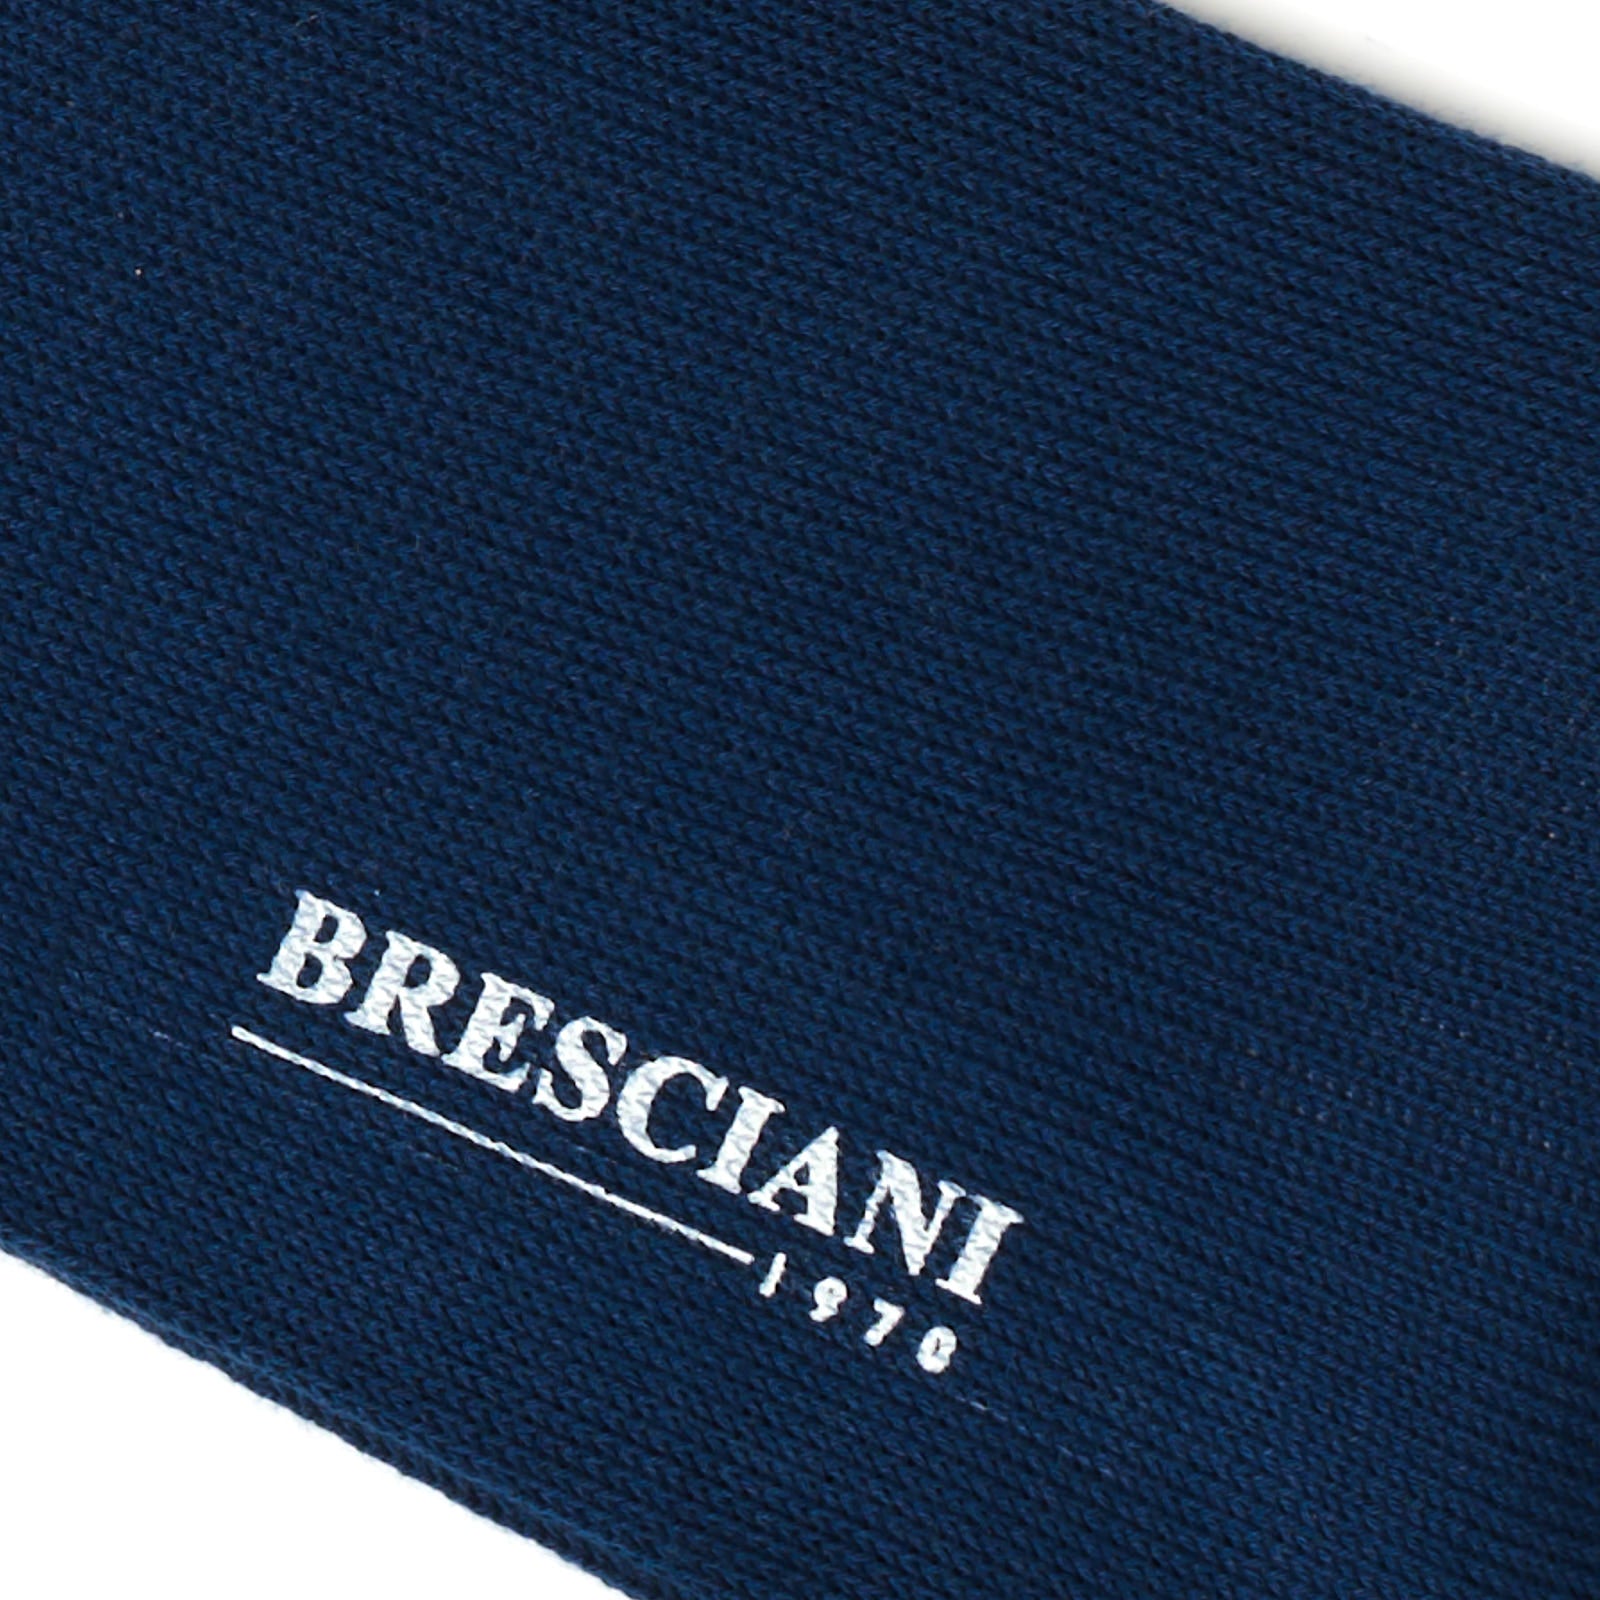 BRESCIANI Cotton Argyle Design Mid Calf Length Socks M-L BRESCIANI